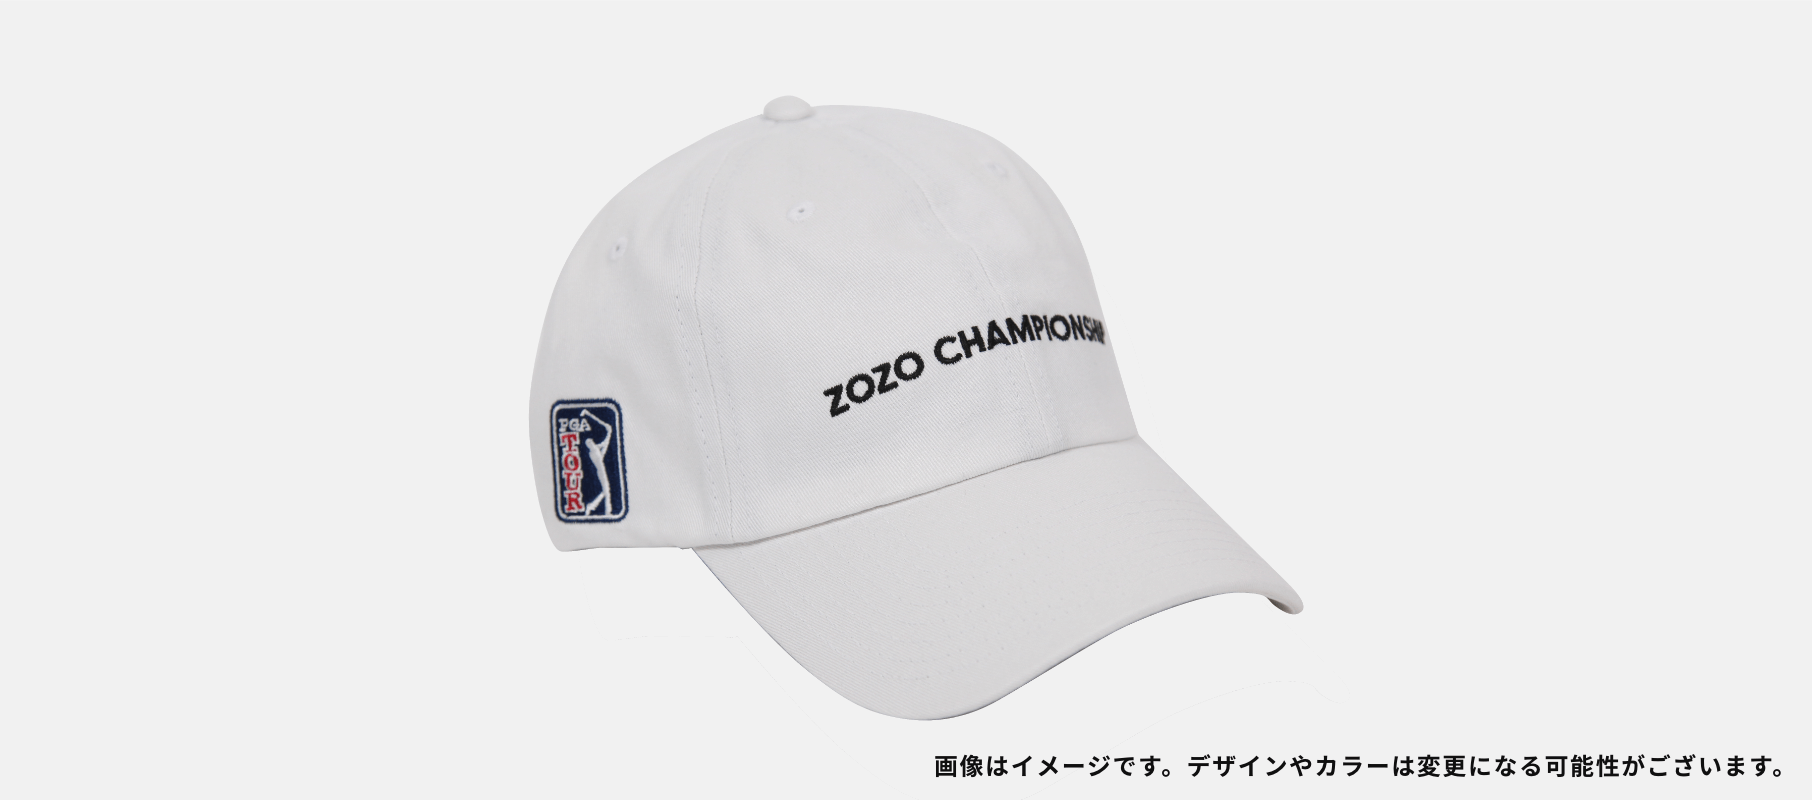 売上実績NO.1 zozoチャンピオン10月22日チケット ゴルフ